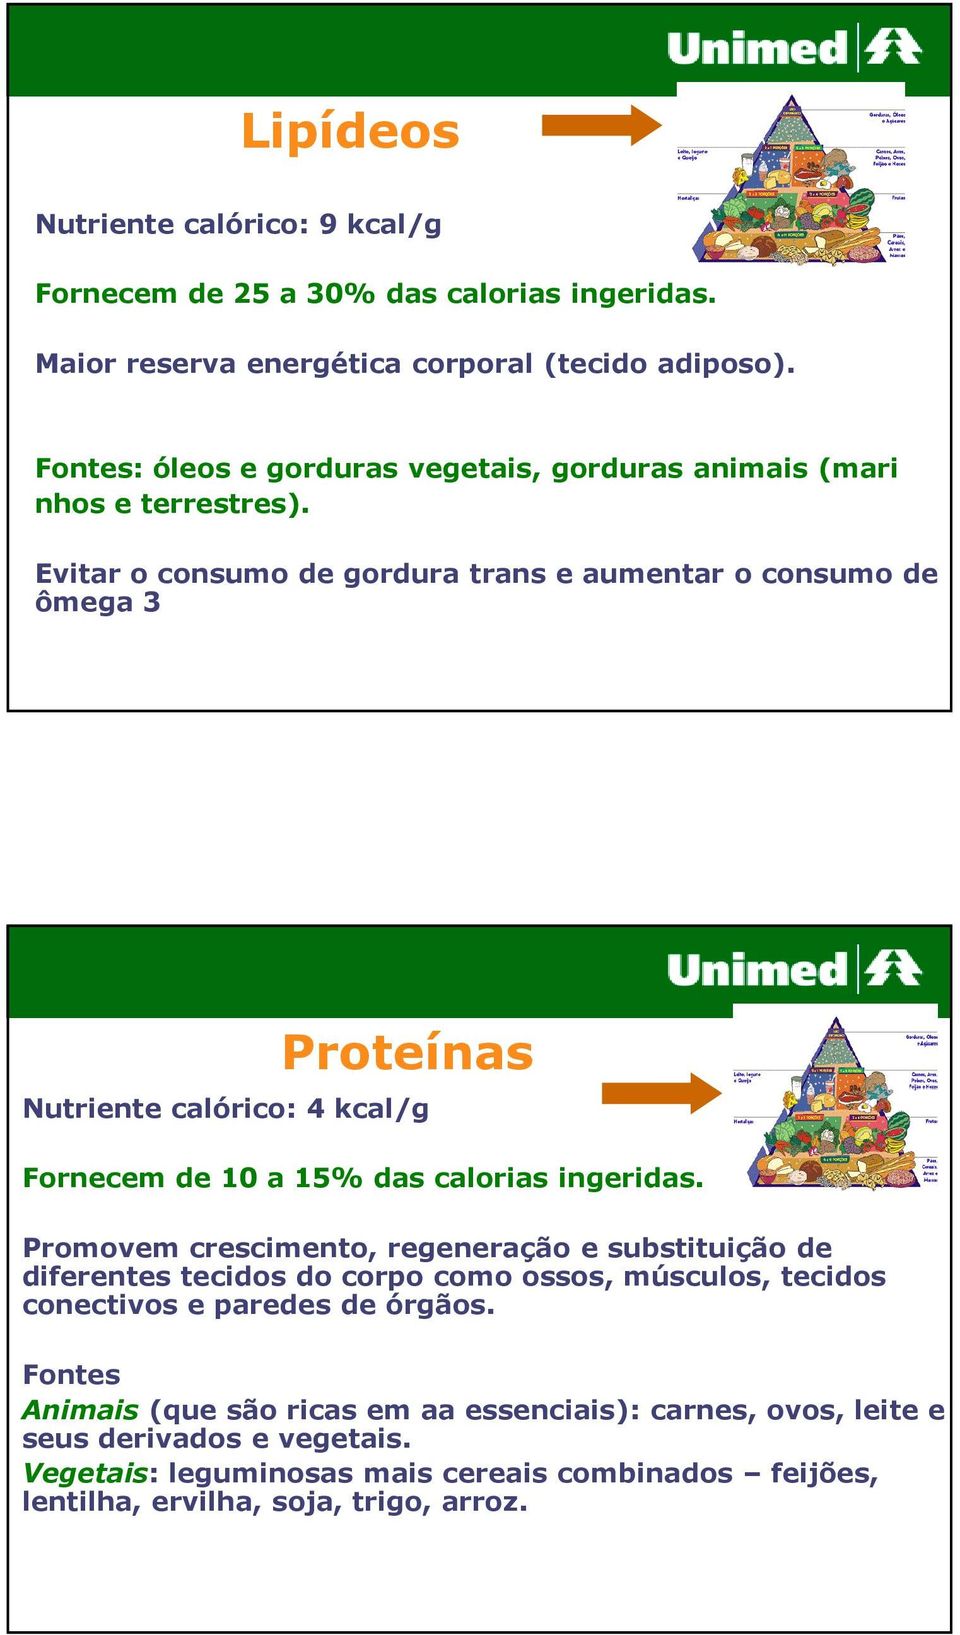 Evitar o consumo de gordura trans e aumentar o consumo de ômega 3 Proteínas Nutriente calórico: 4 kcal/g Fornecem de 10 a 15% das calorias ingeridas.